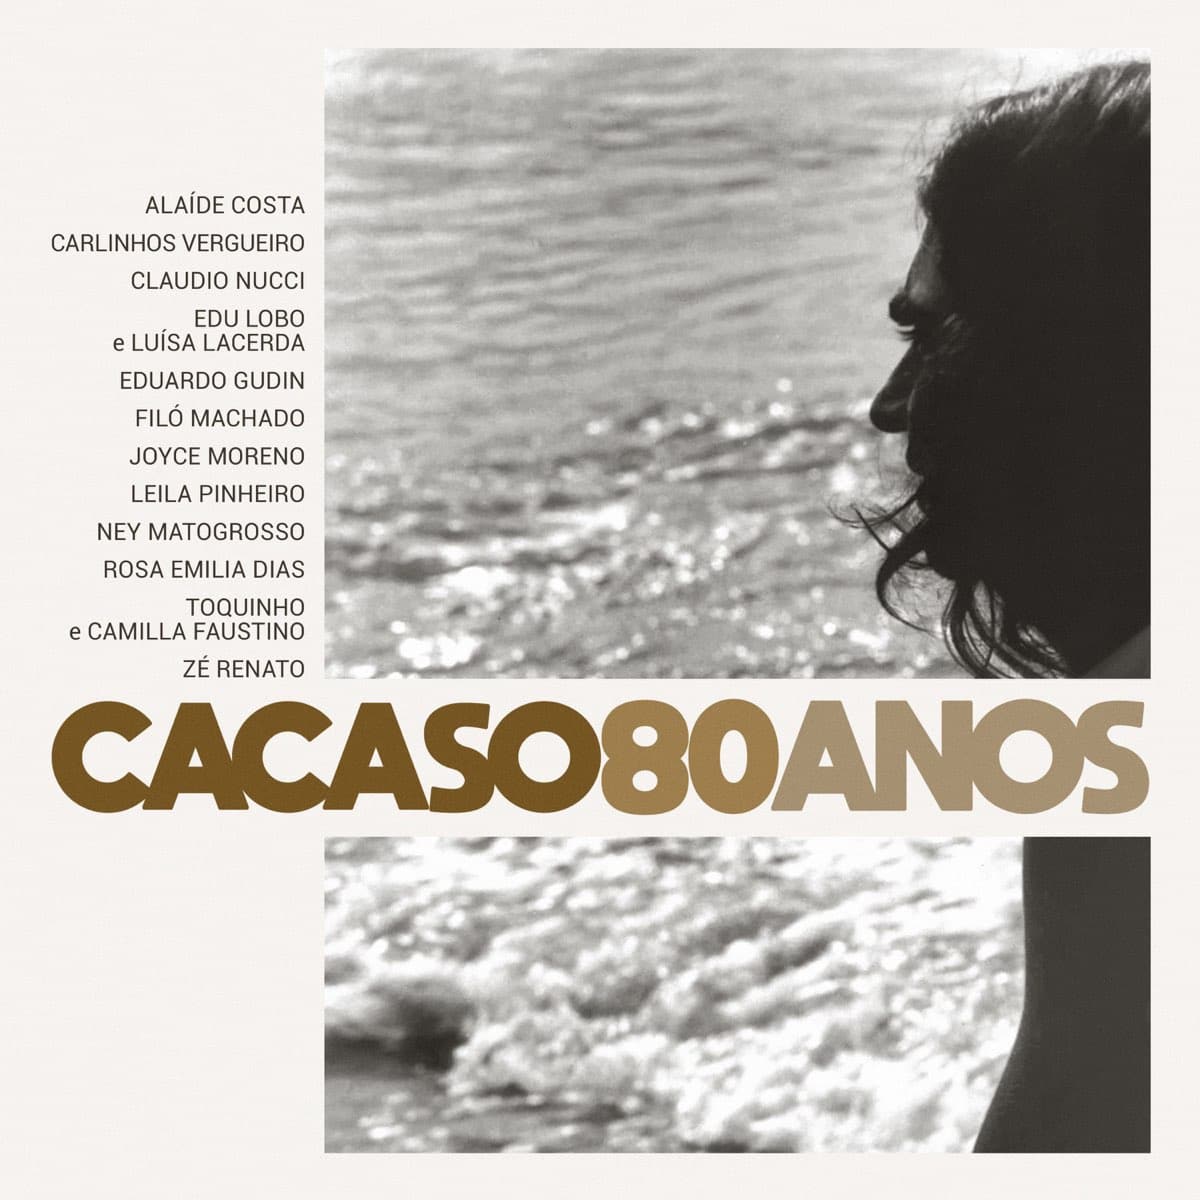 revistaprosaversoearte.com - Álbum celebra 80 anos de Cacaso, com participação de grandes nomes da música brasileira